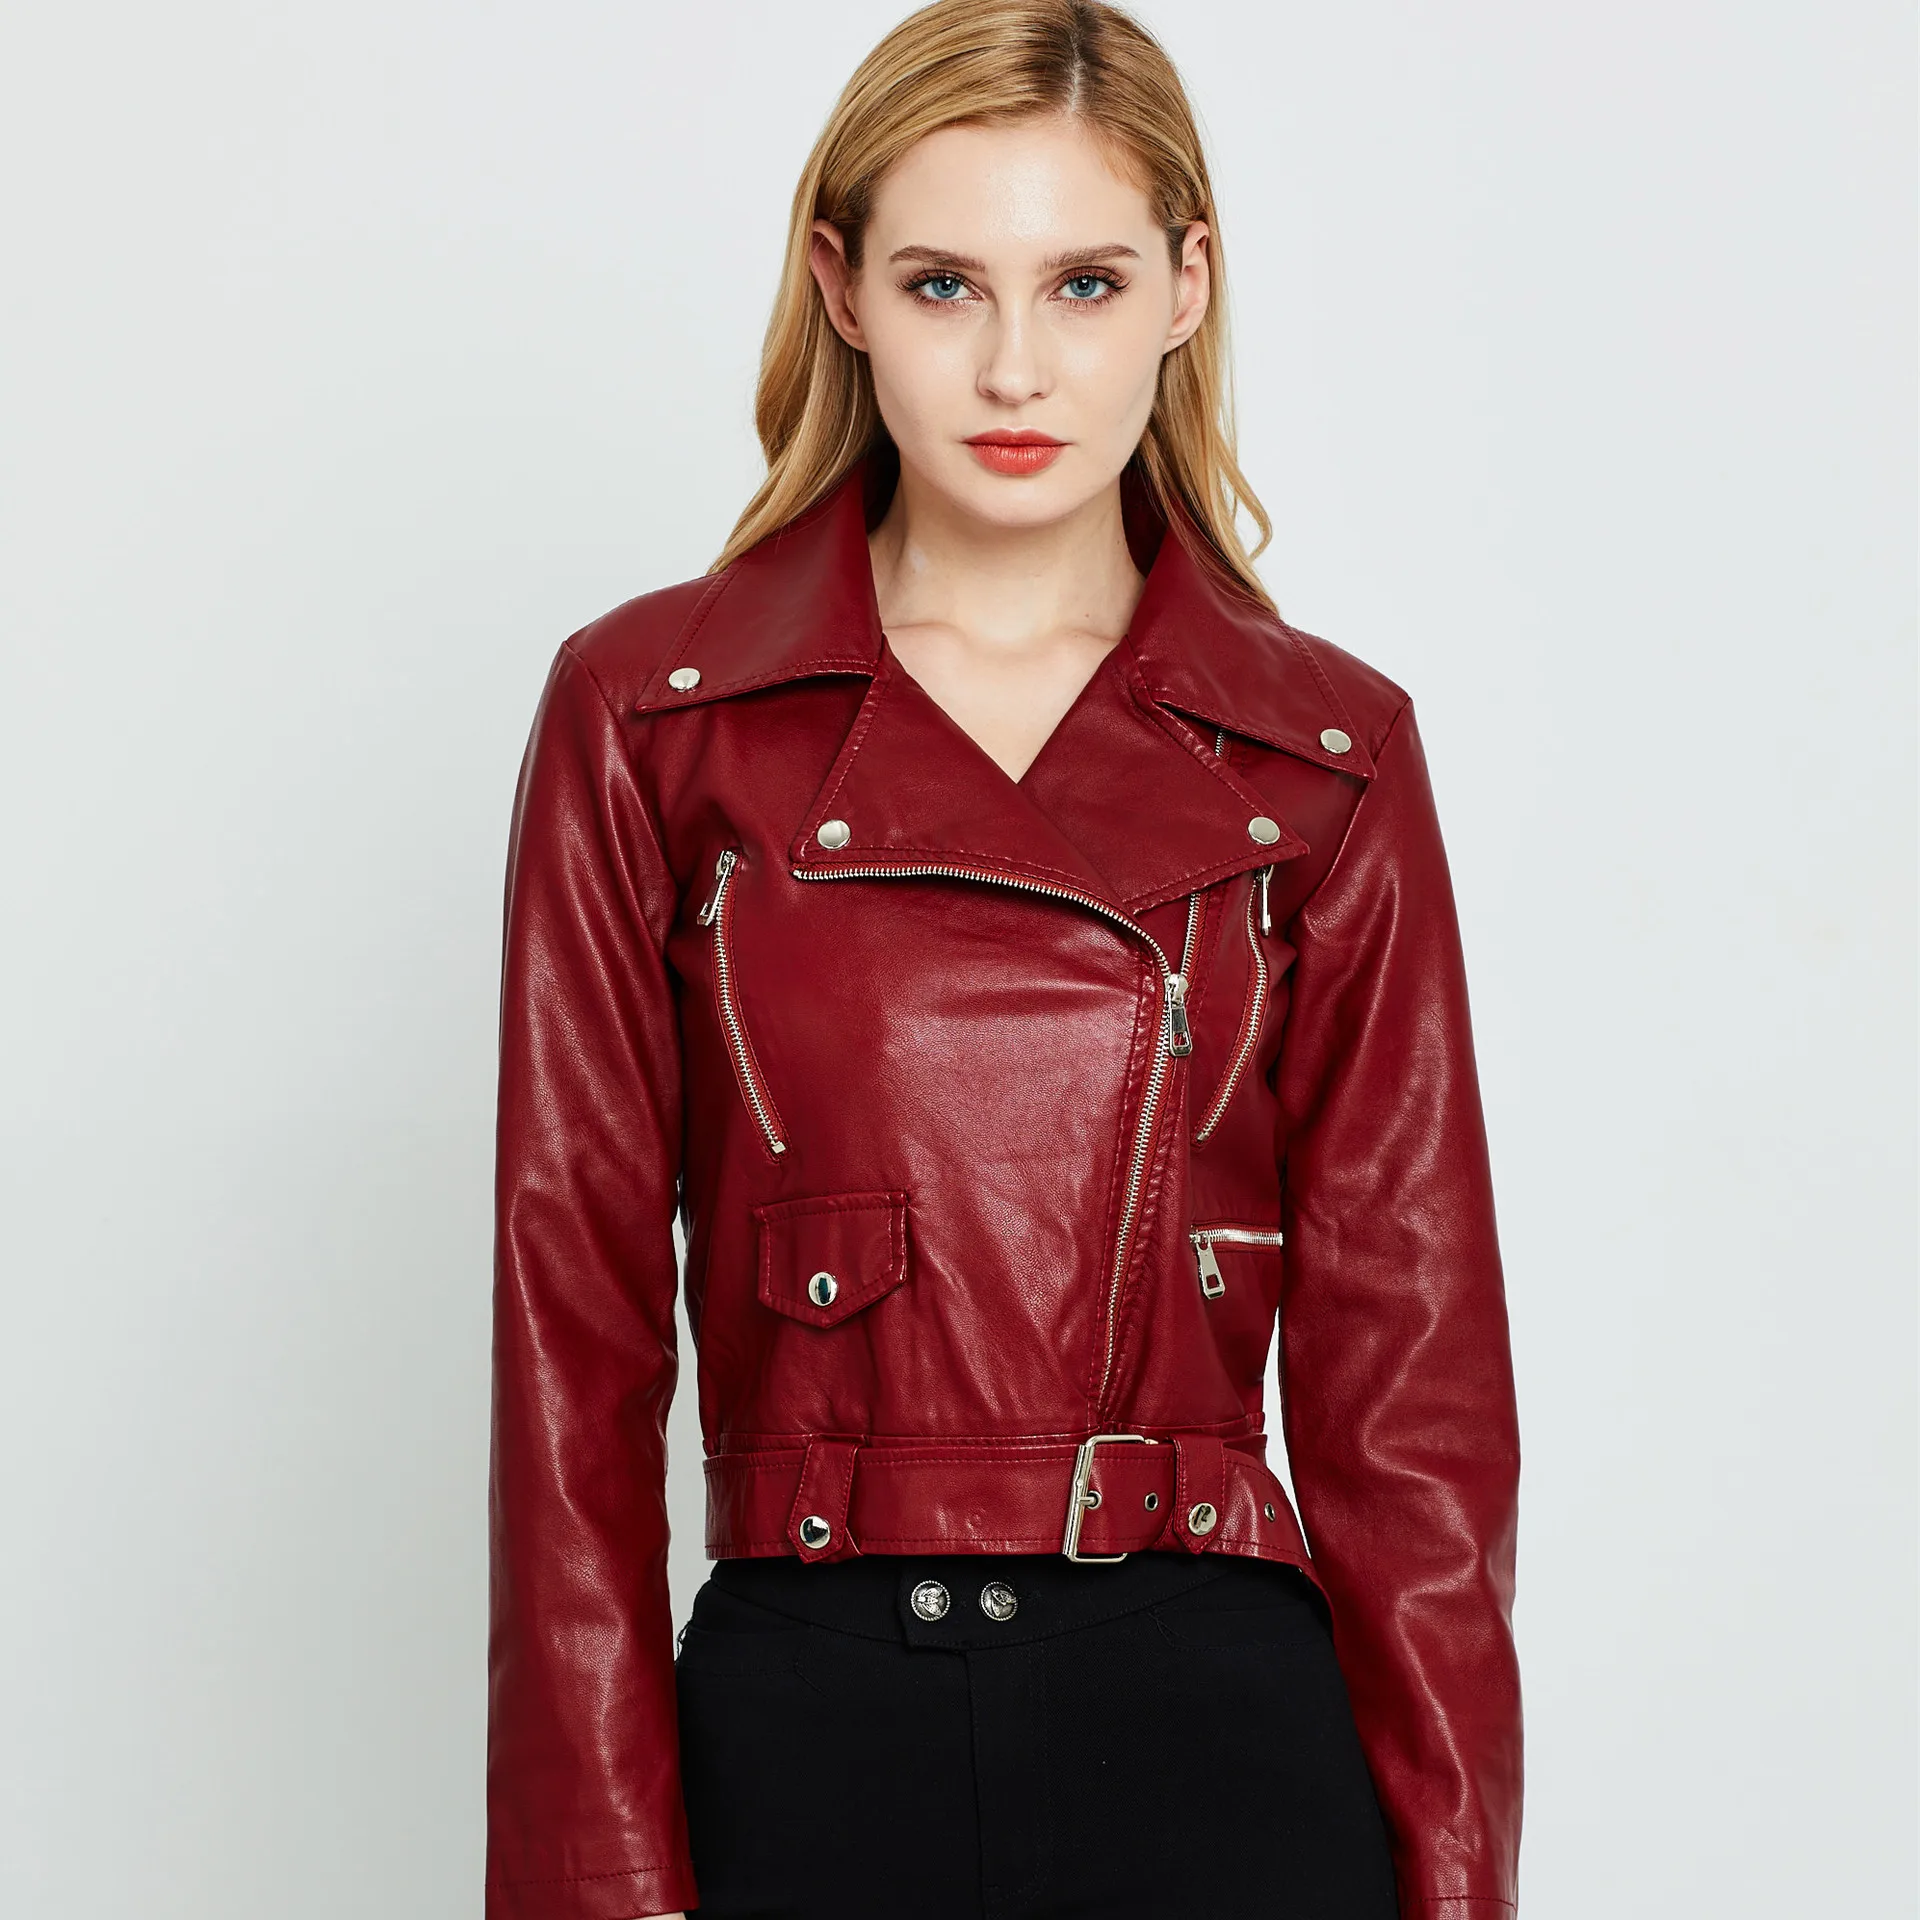 YYFS новые модные женские осенние зимние черные Куртки из искусственной кожи базовое пальто на молнии байкерская куртка с отложным воротником - Цвет: Красный